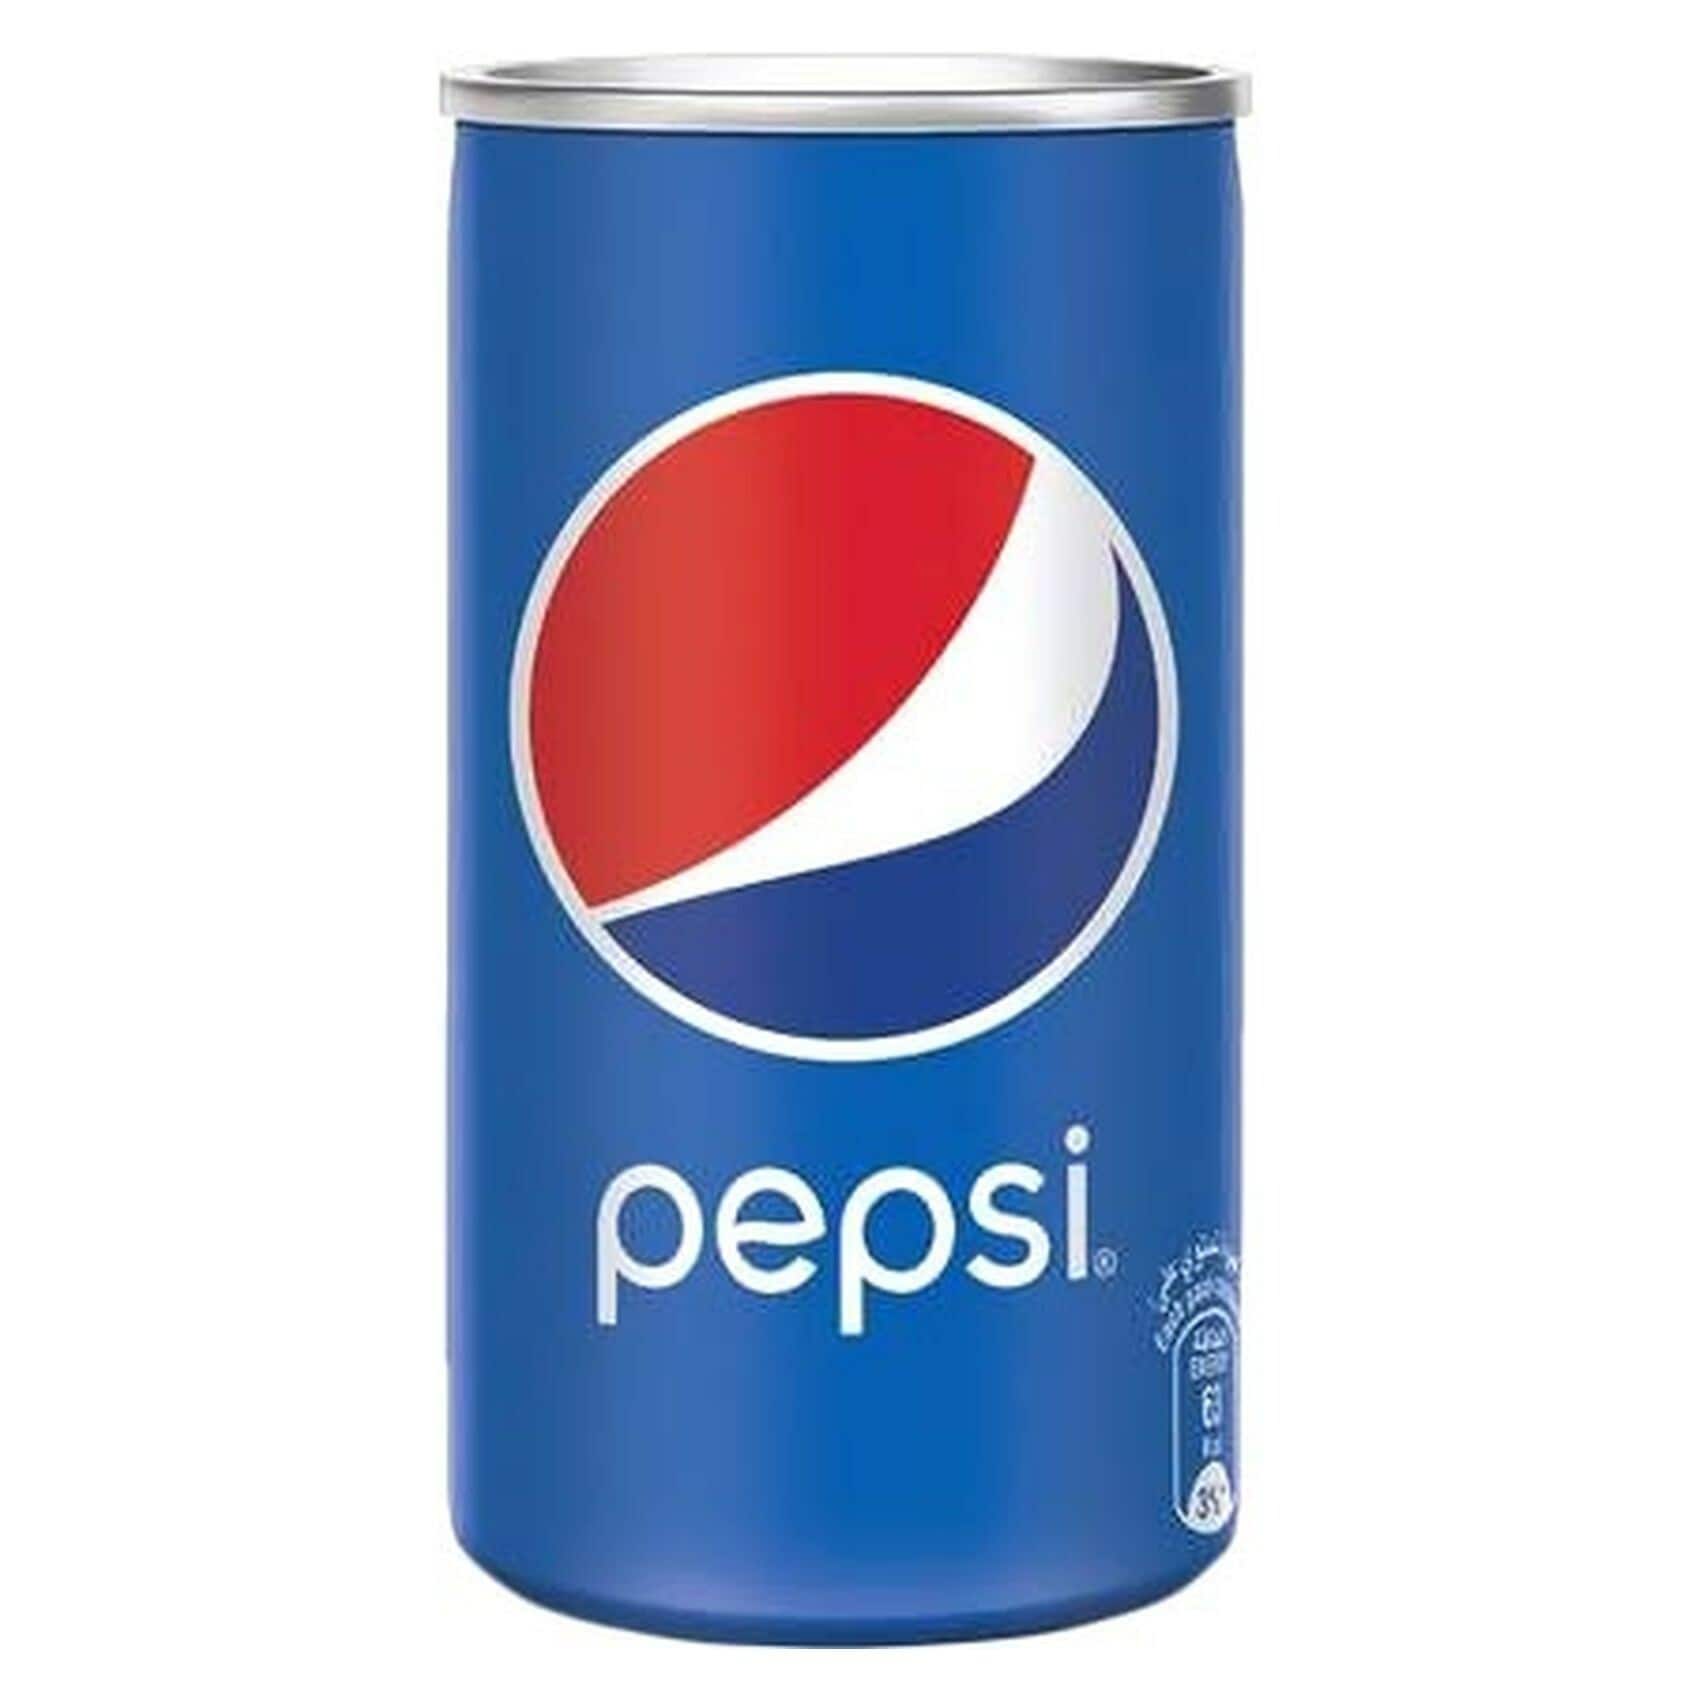 Buy Pepsi Carbonated Soft Drink 155ml Online - Shop Beverages on ...